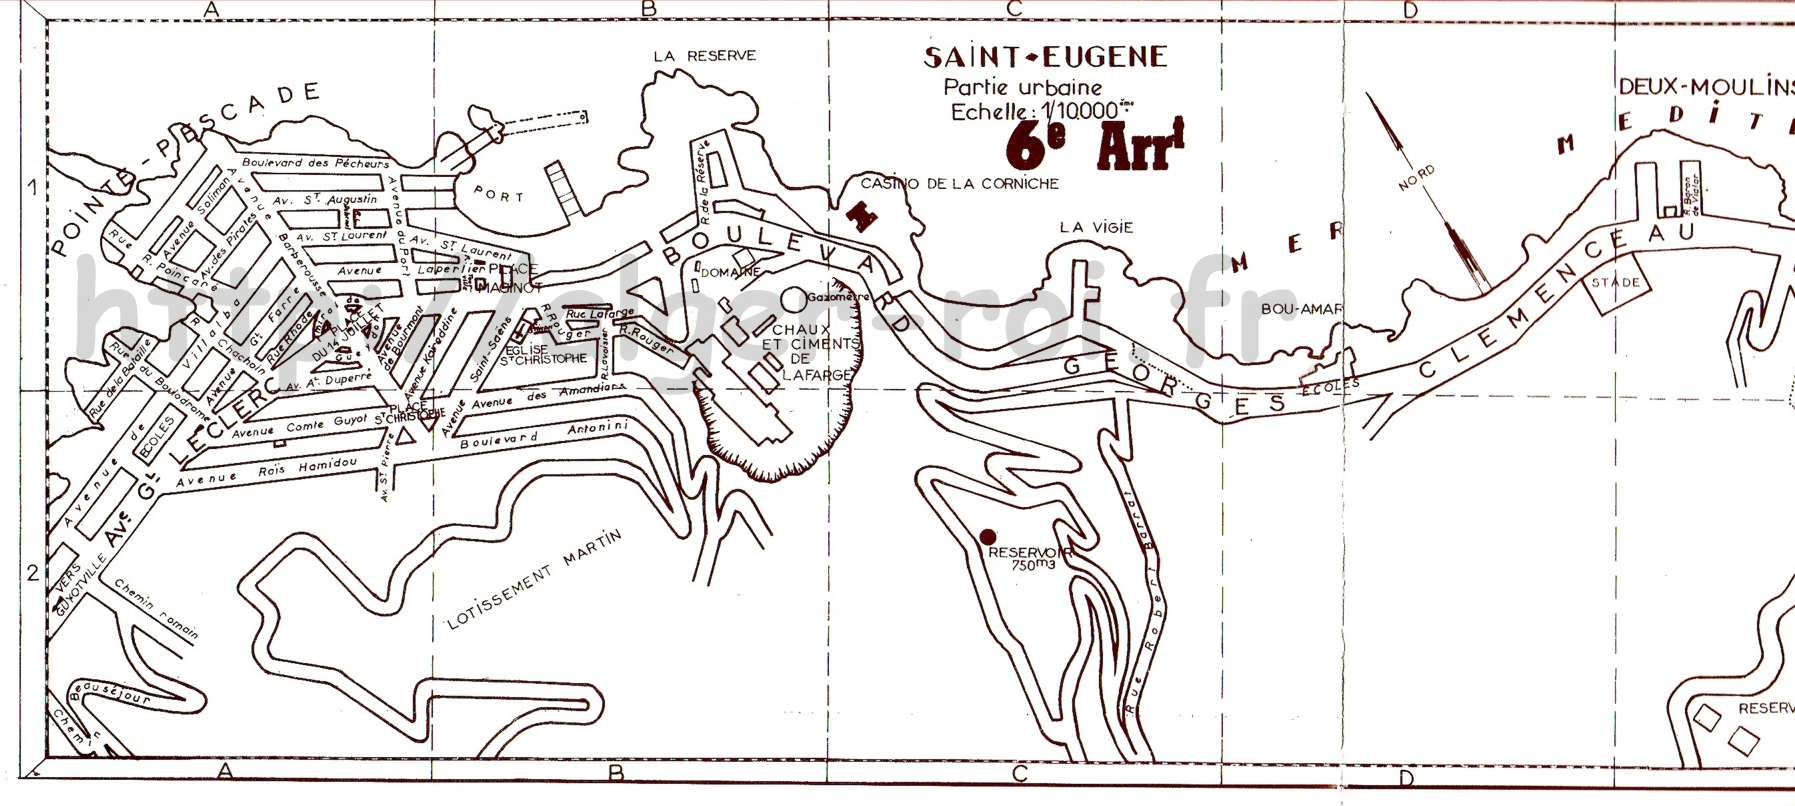 PLAN de la VILLE 1961,saint-eugene